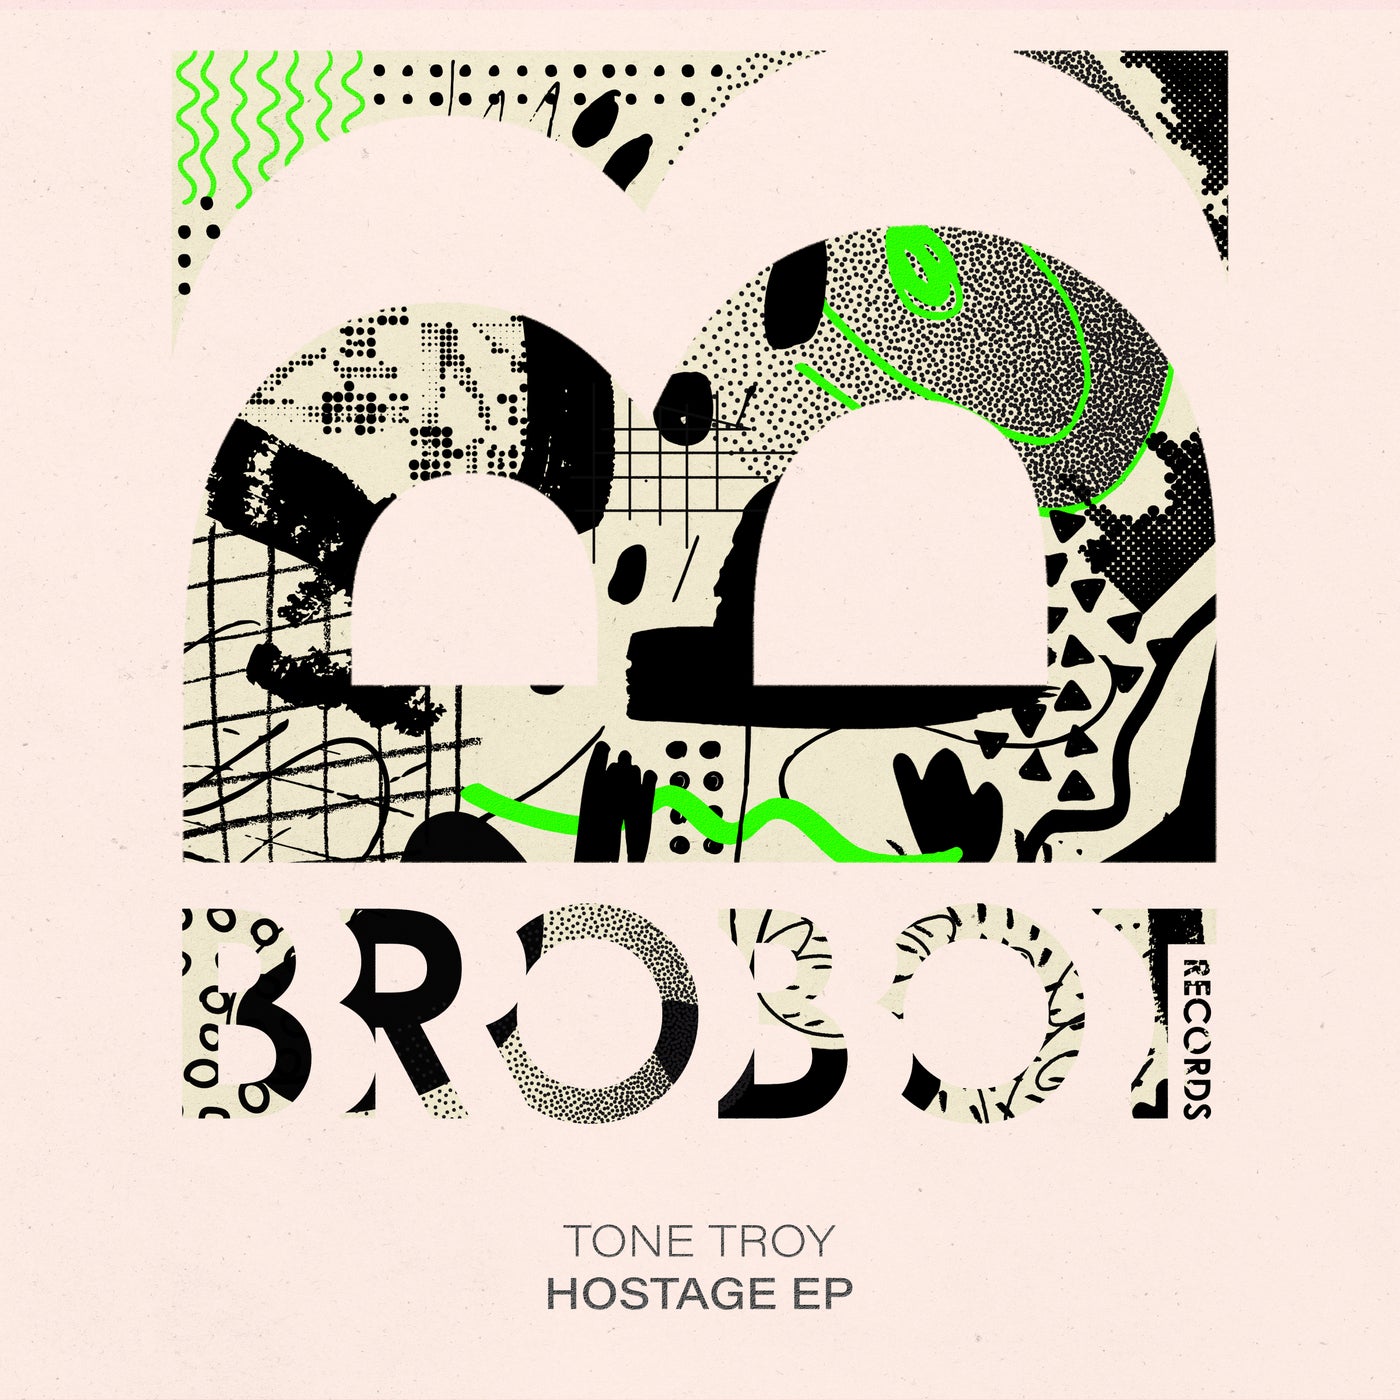 Hostage EP